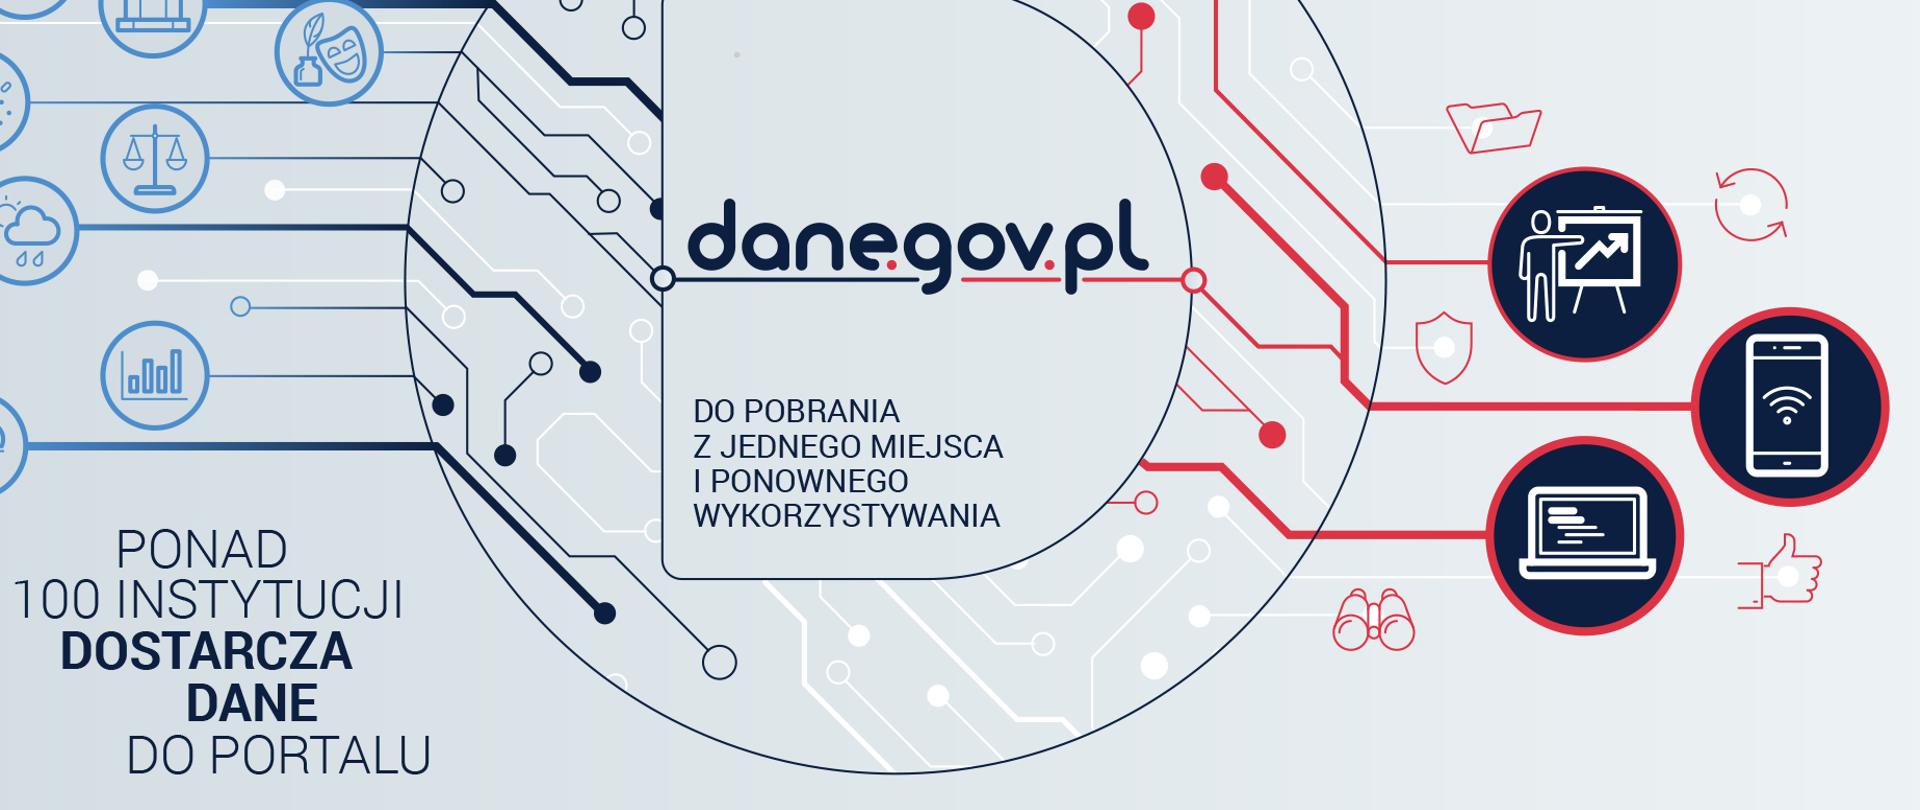 Dane.gov.pl - infografika